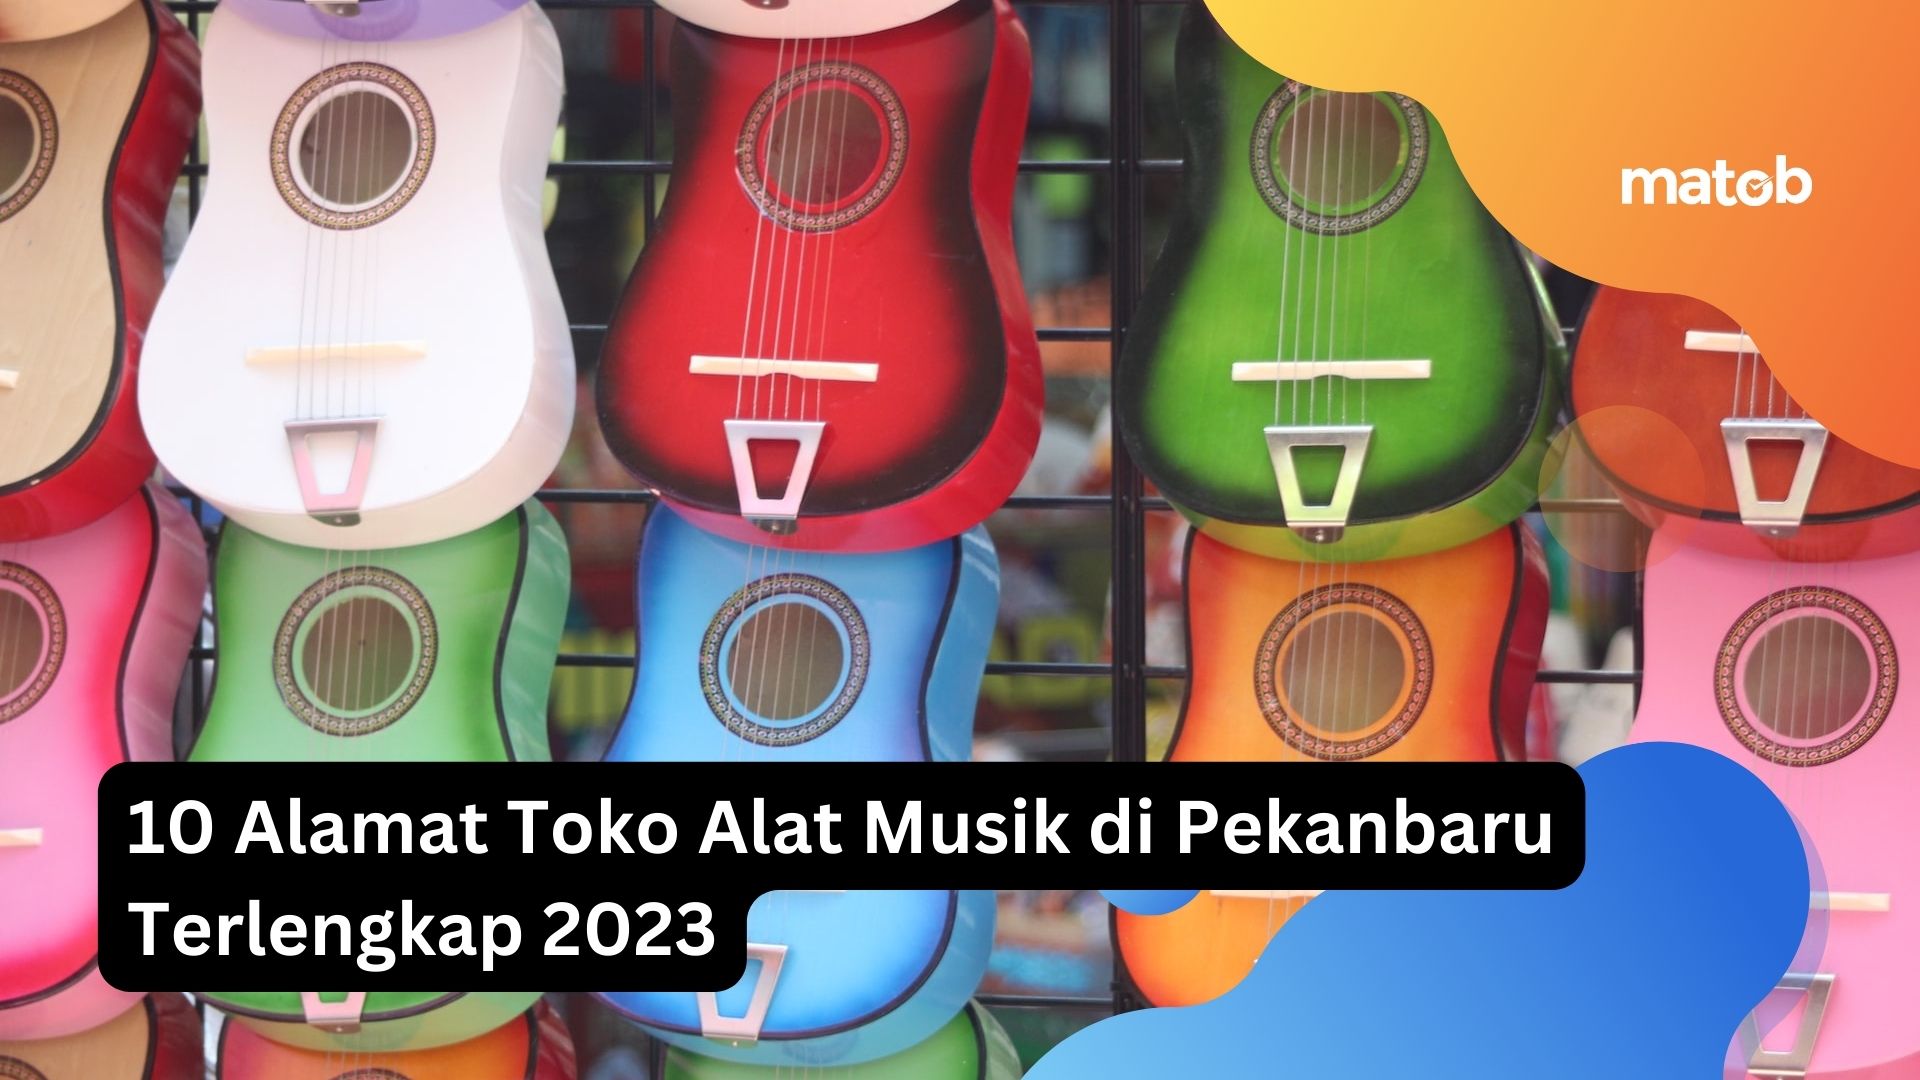 10 Alamat Toko Alat Musik di Pekanbaru Terlengkap 2023